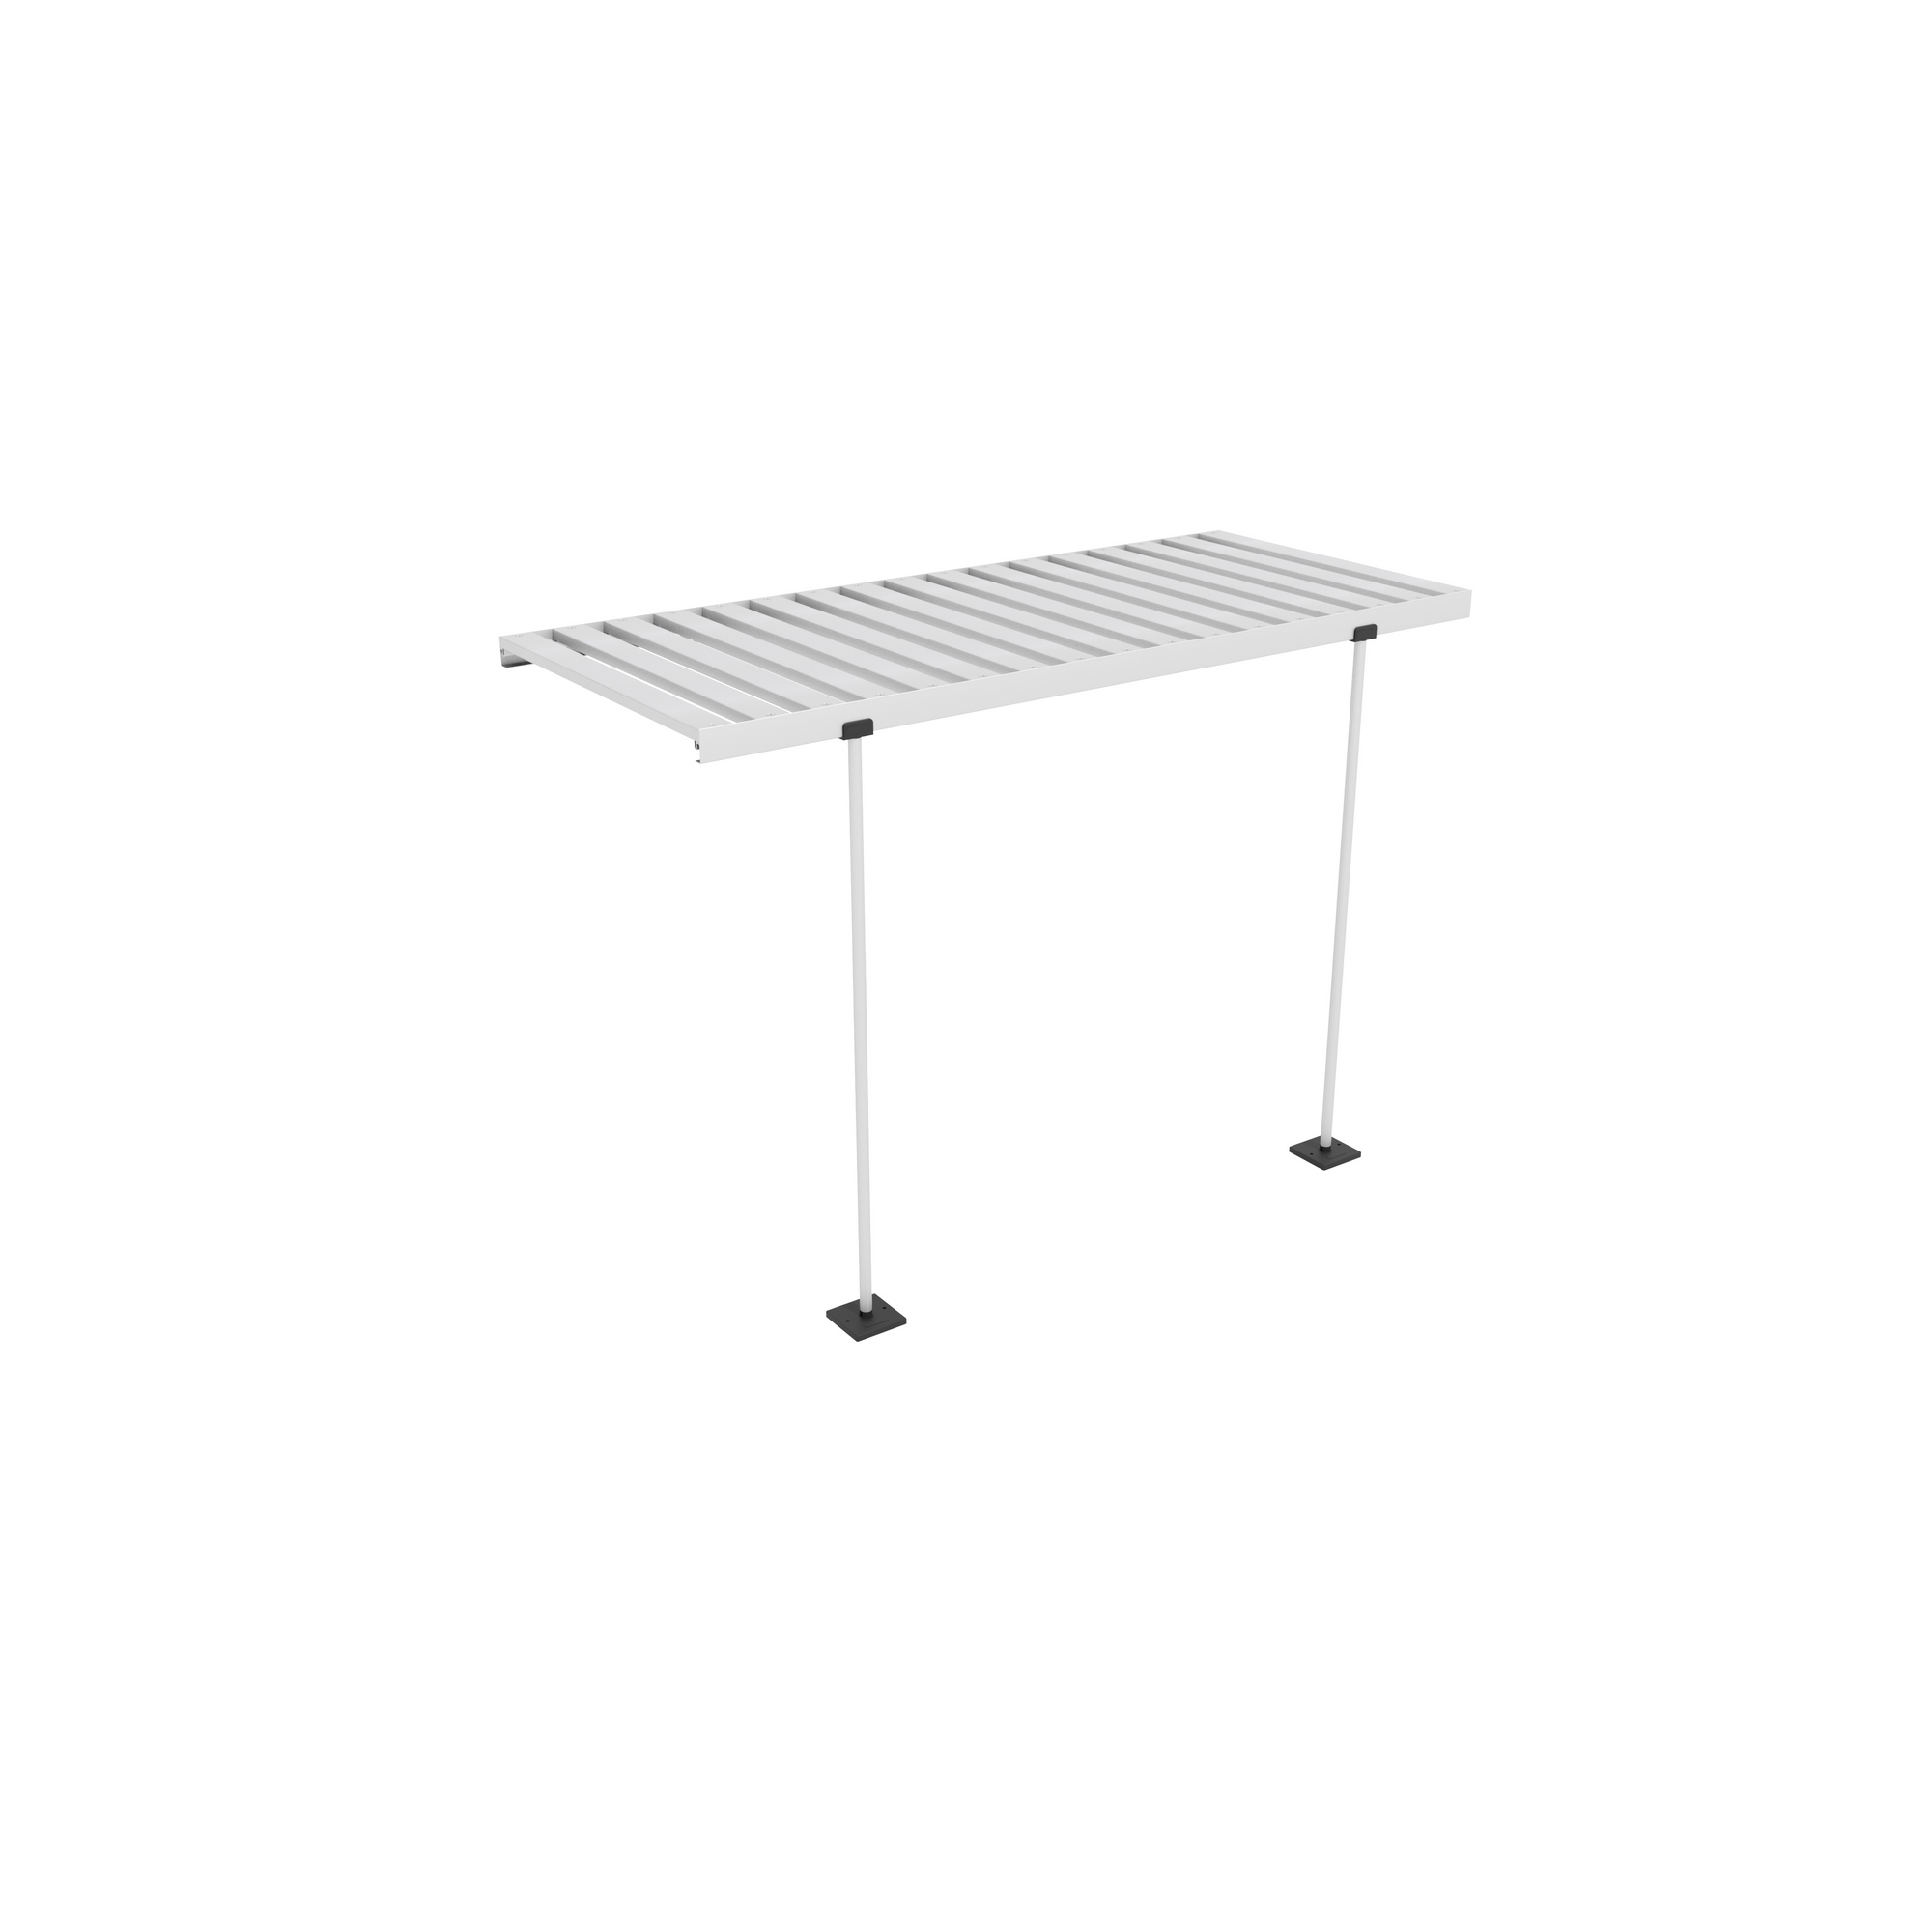 Abklappbarer Alu-Tisch für Gewächshäuser silbern + product picture